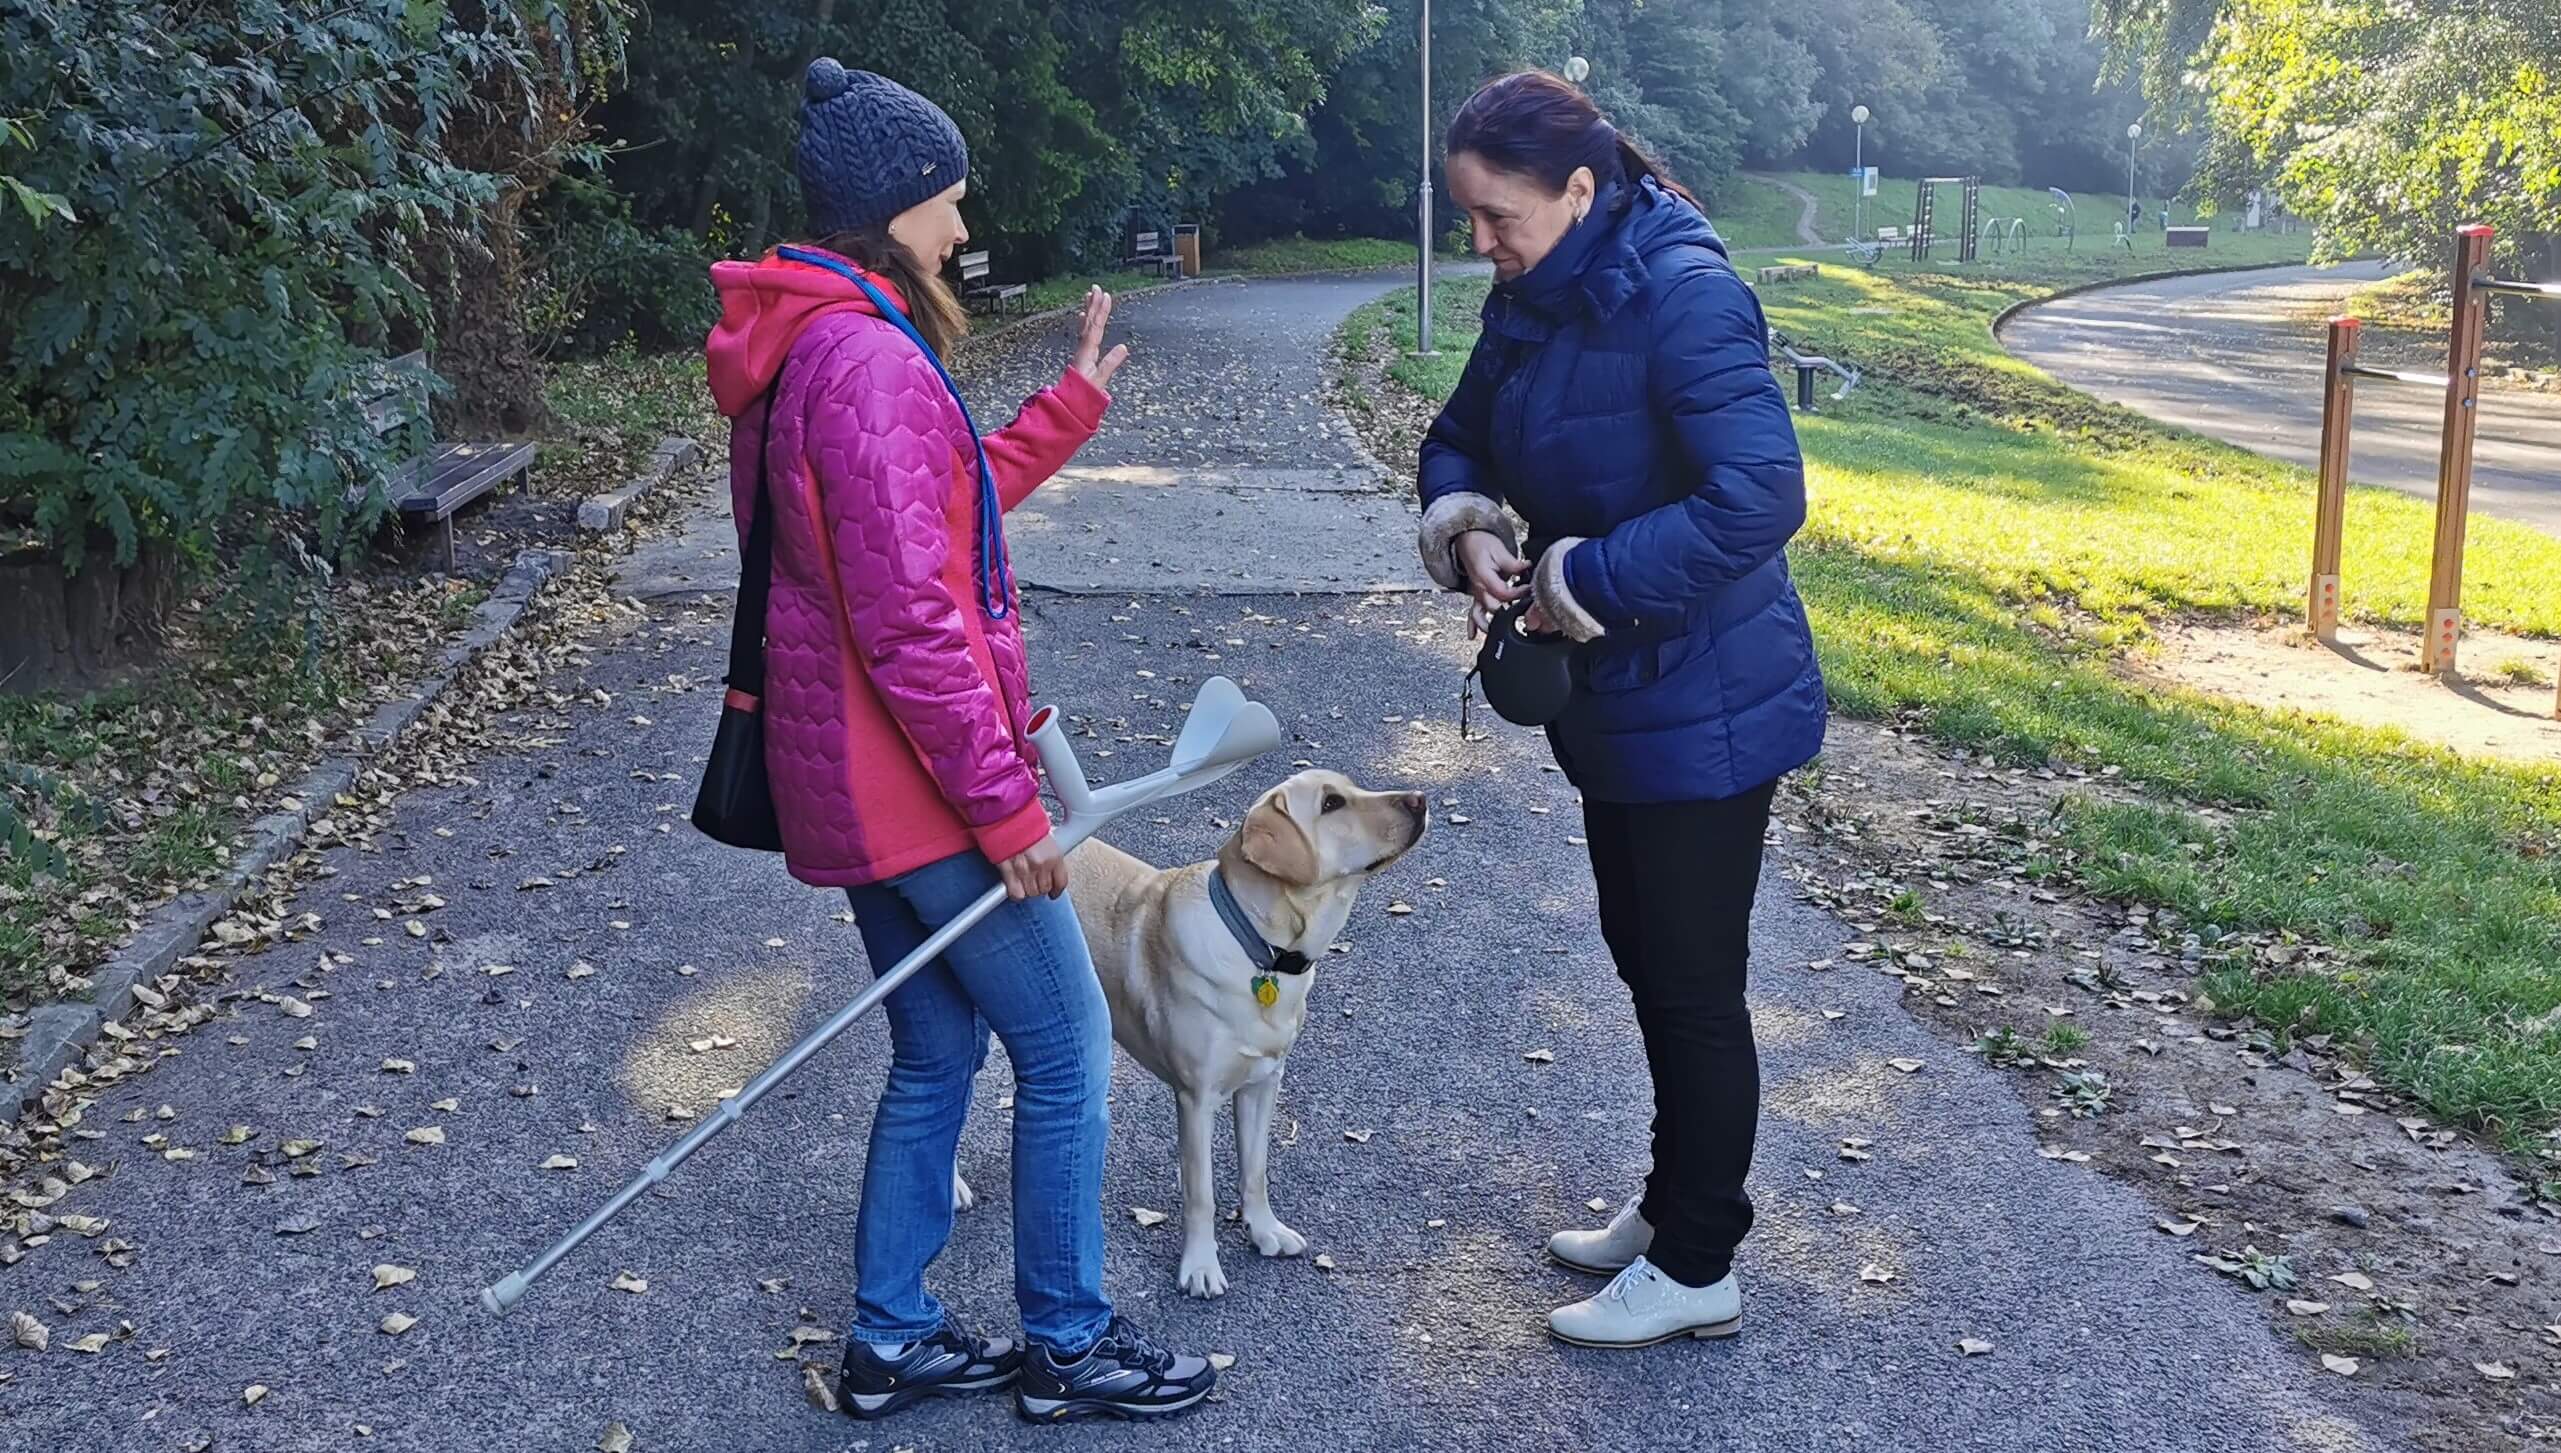 Na chodníku v parku stojí záujemkyňa o vodiaceho psa s cvičiteľkou a rozprávajú sa. Pri nich stojí vodiaci pes - žltý labrador bez vôdzky a postroja  a spýtavo sa pozerá na klientku.